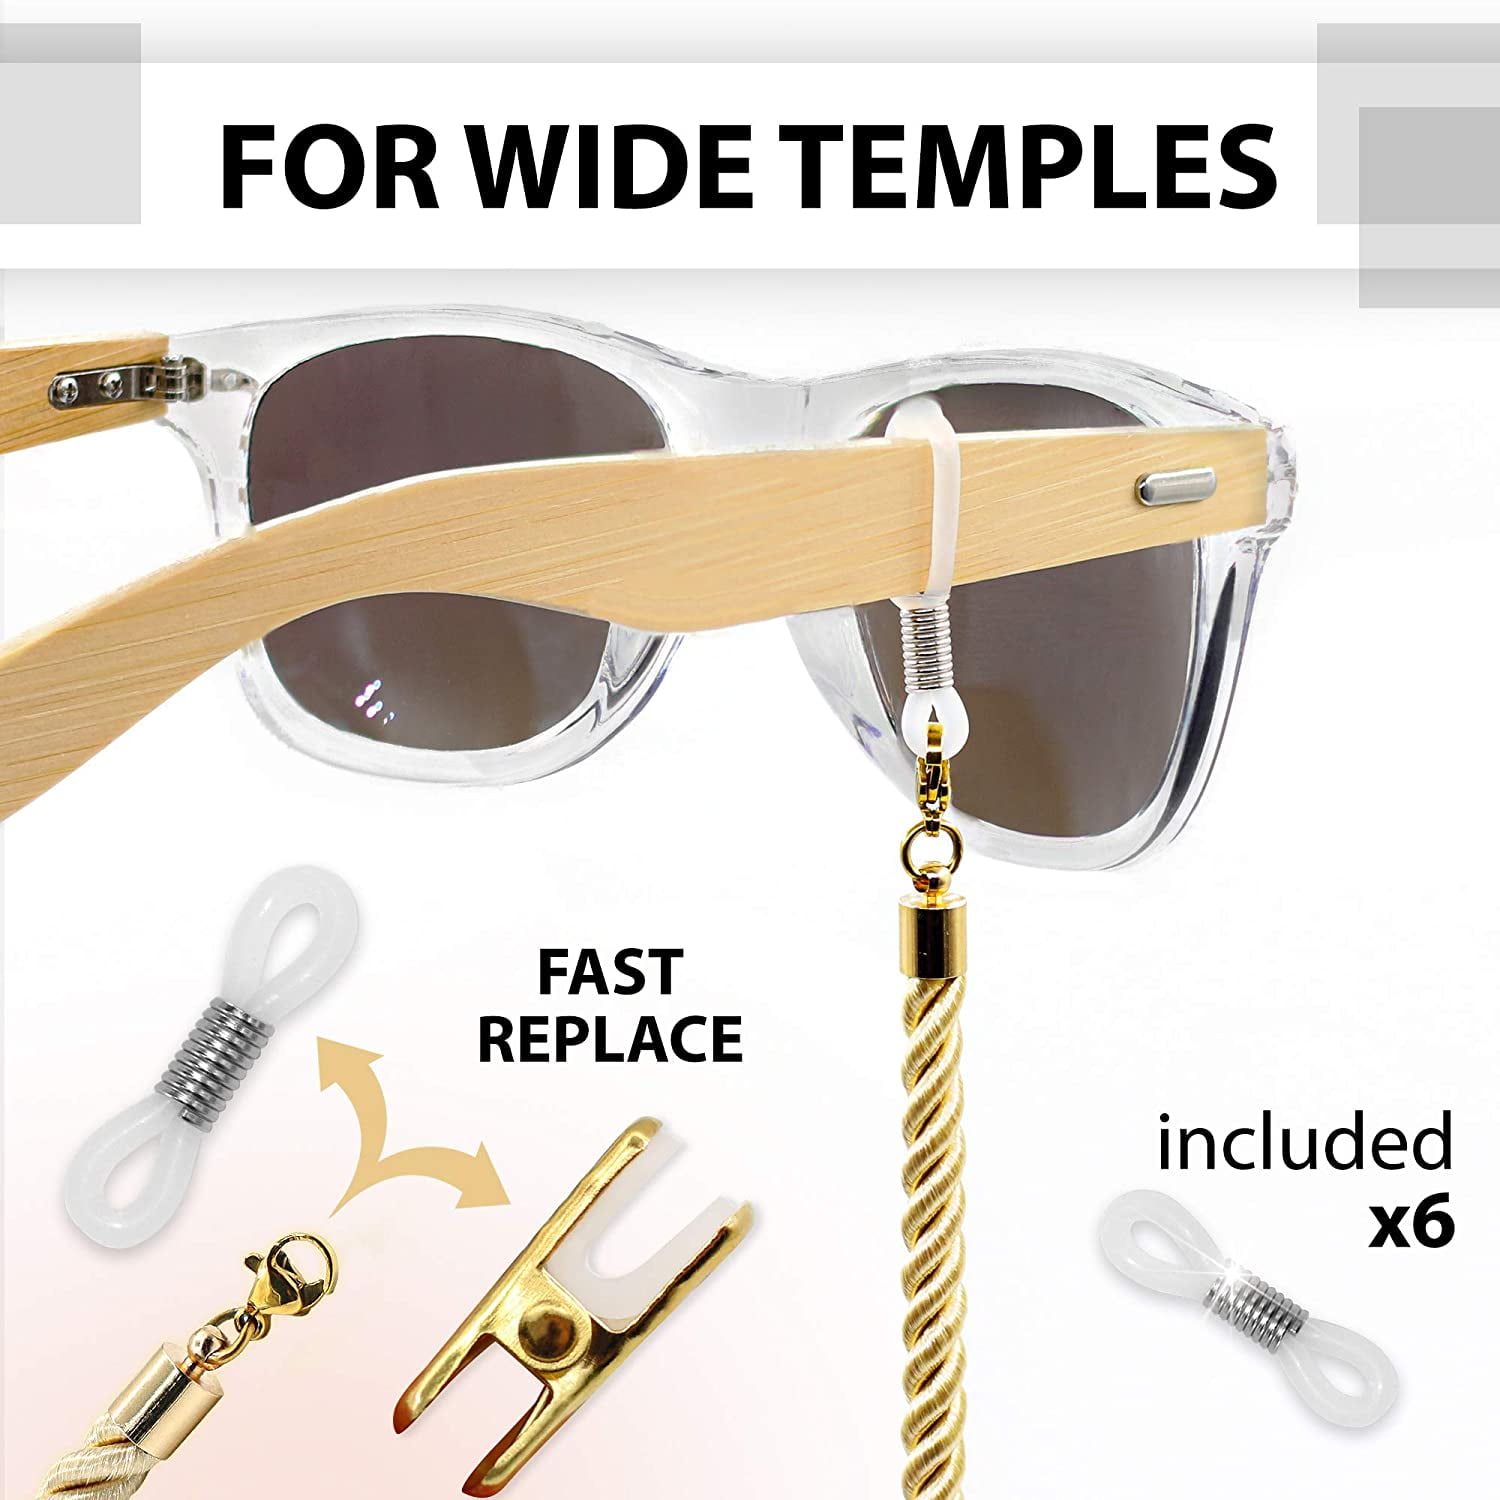 Eye glass holder Cotton 3 Eyeglasses Strap Lanyards – Sigonna